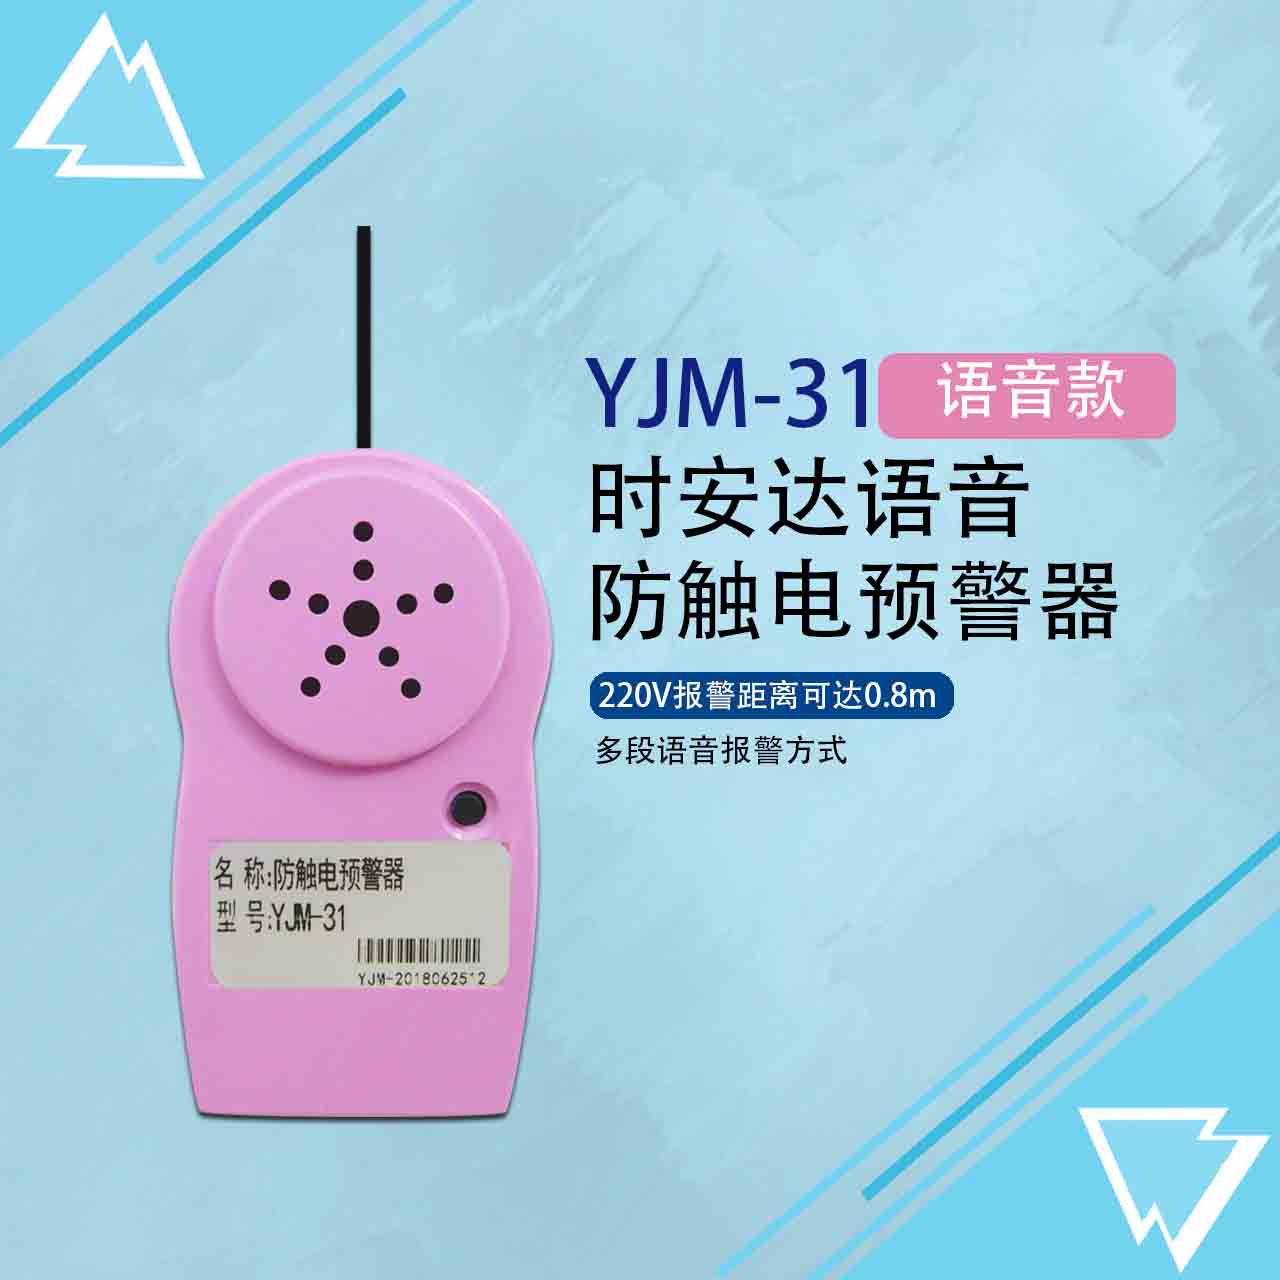 YJM-31时安达防触电预警器